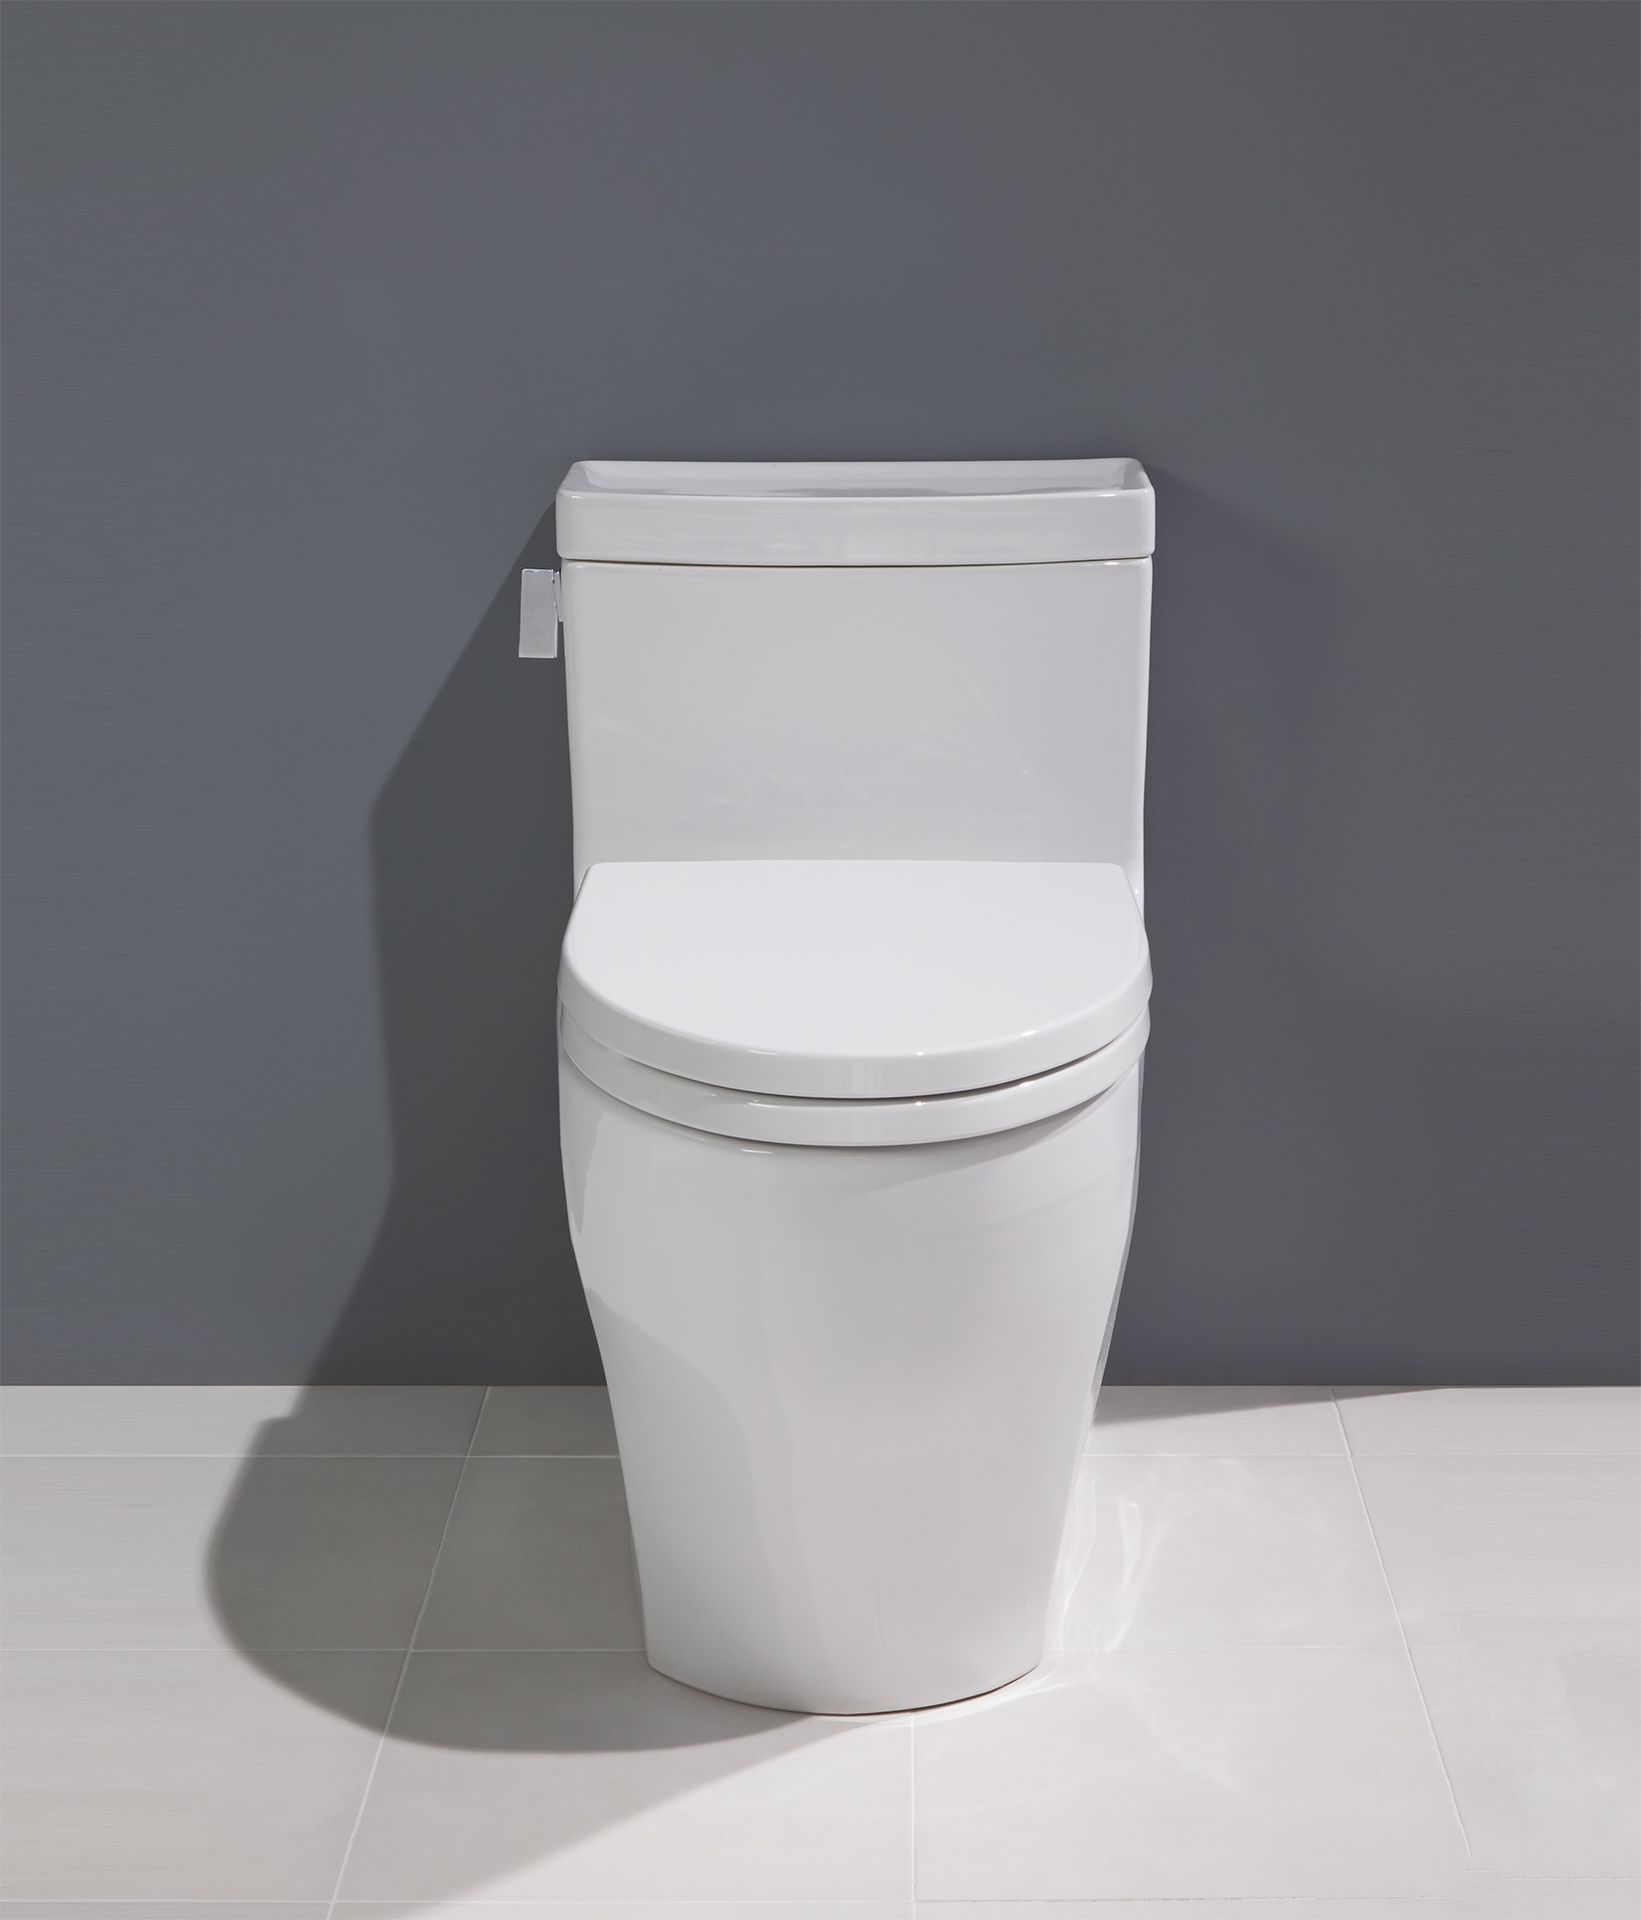 Toto Legato 1pc Toilet Dynasty Bathrooms